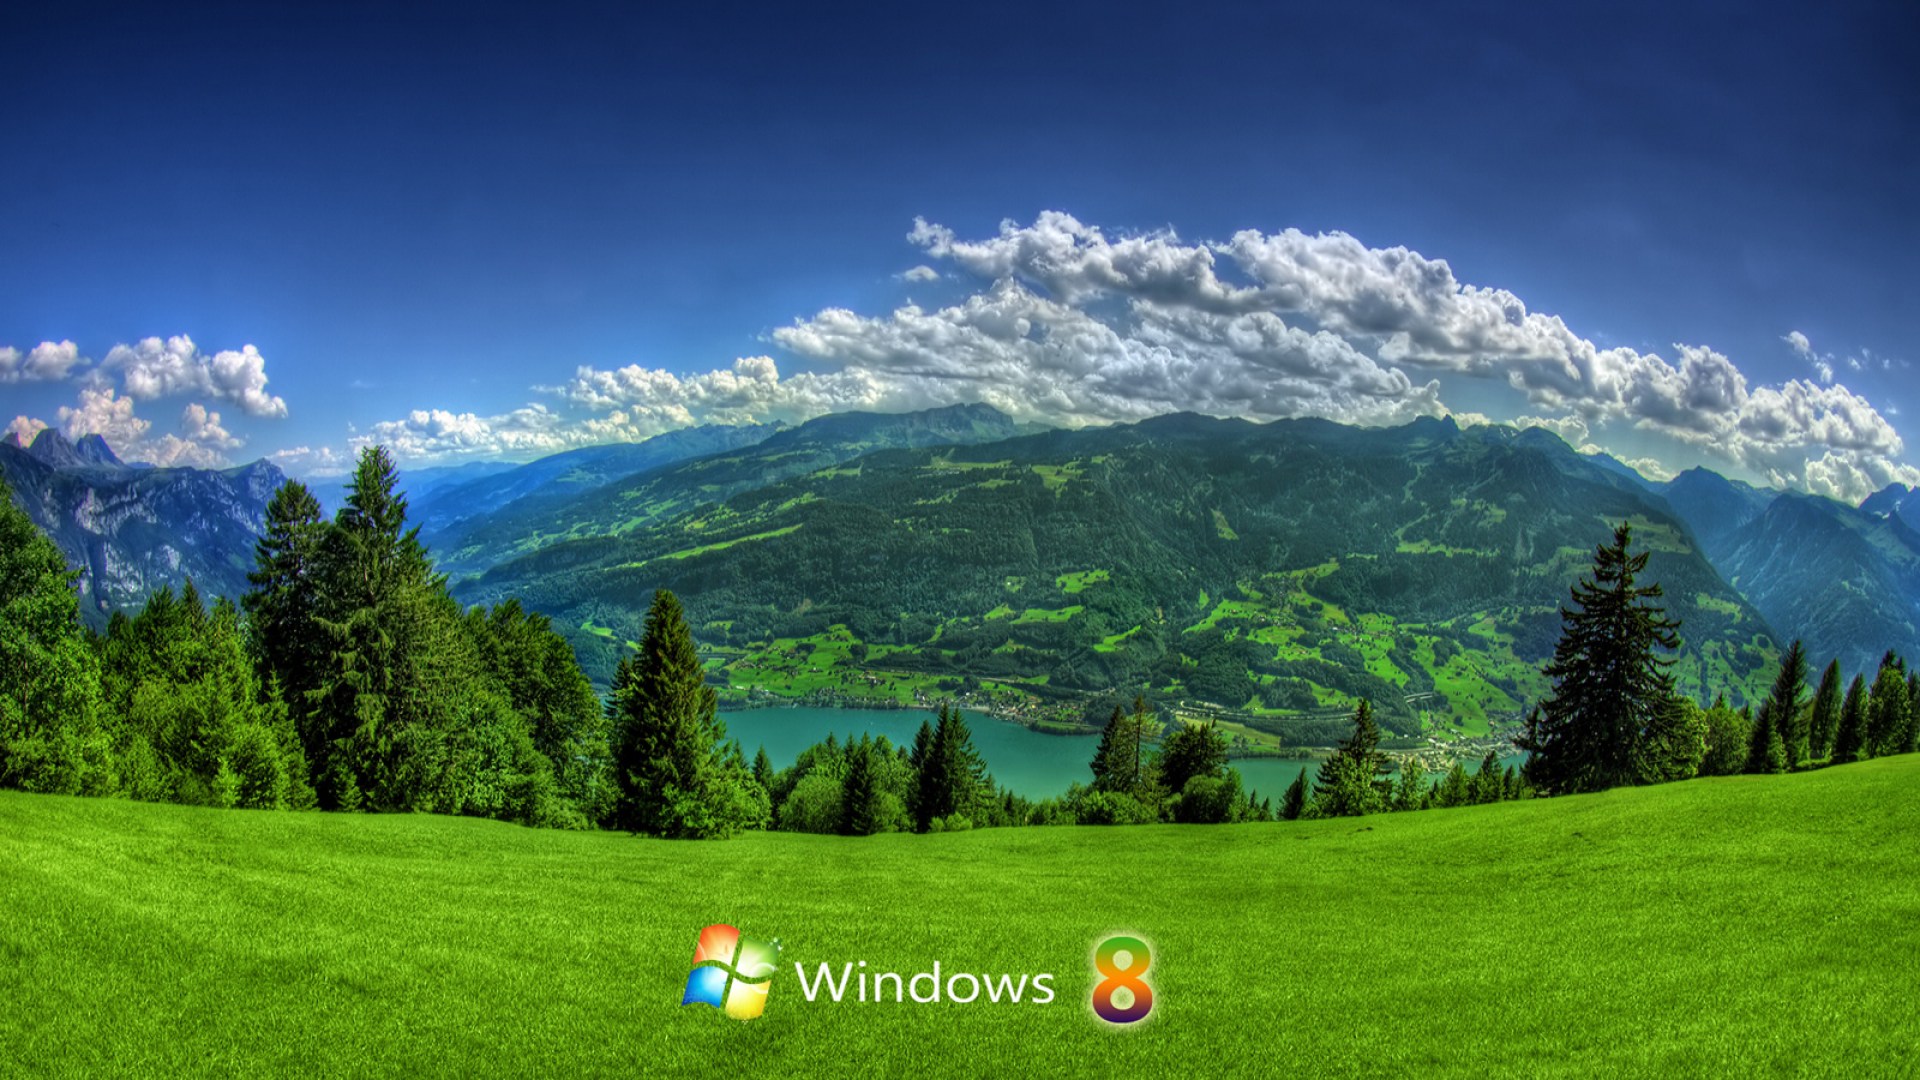  Windows 8 Wallpapers 130 High Resolution Desktop Backgrounds